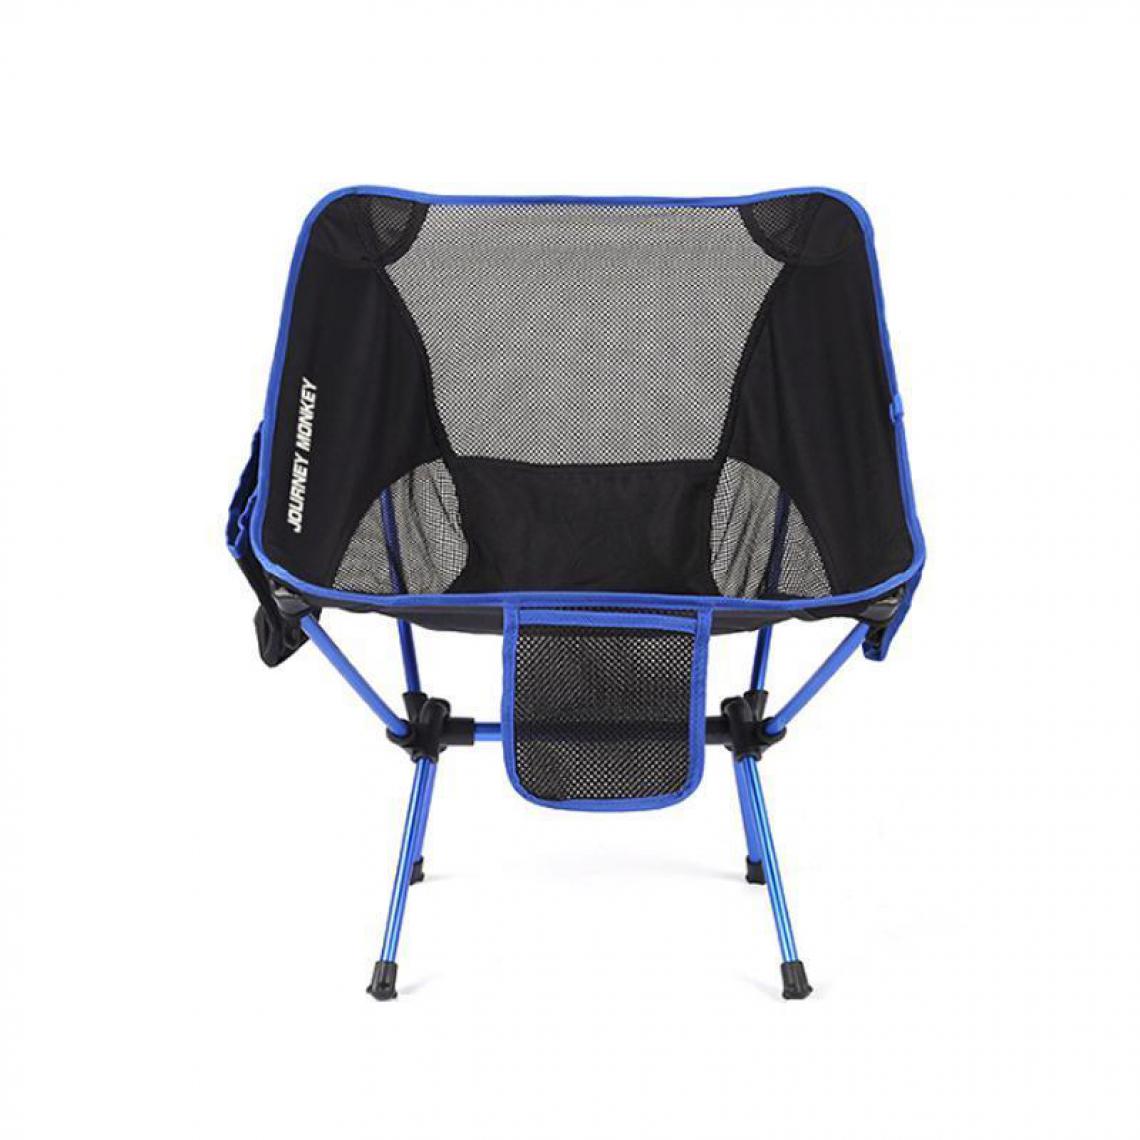 Justgreenbox - Chaise pliante portable extérieure ultralégère charge maximale 120 kg, Bleu - Chaises